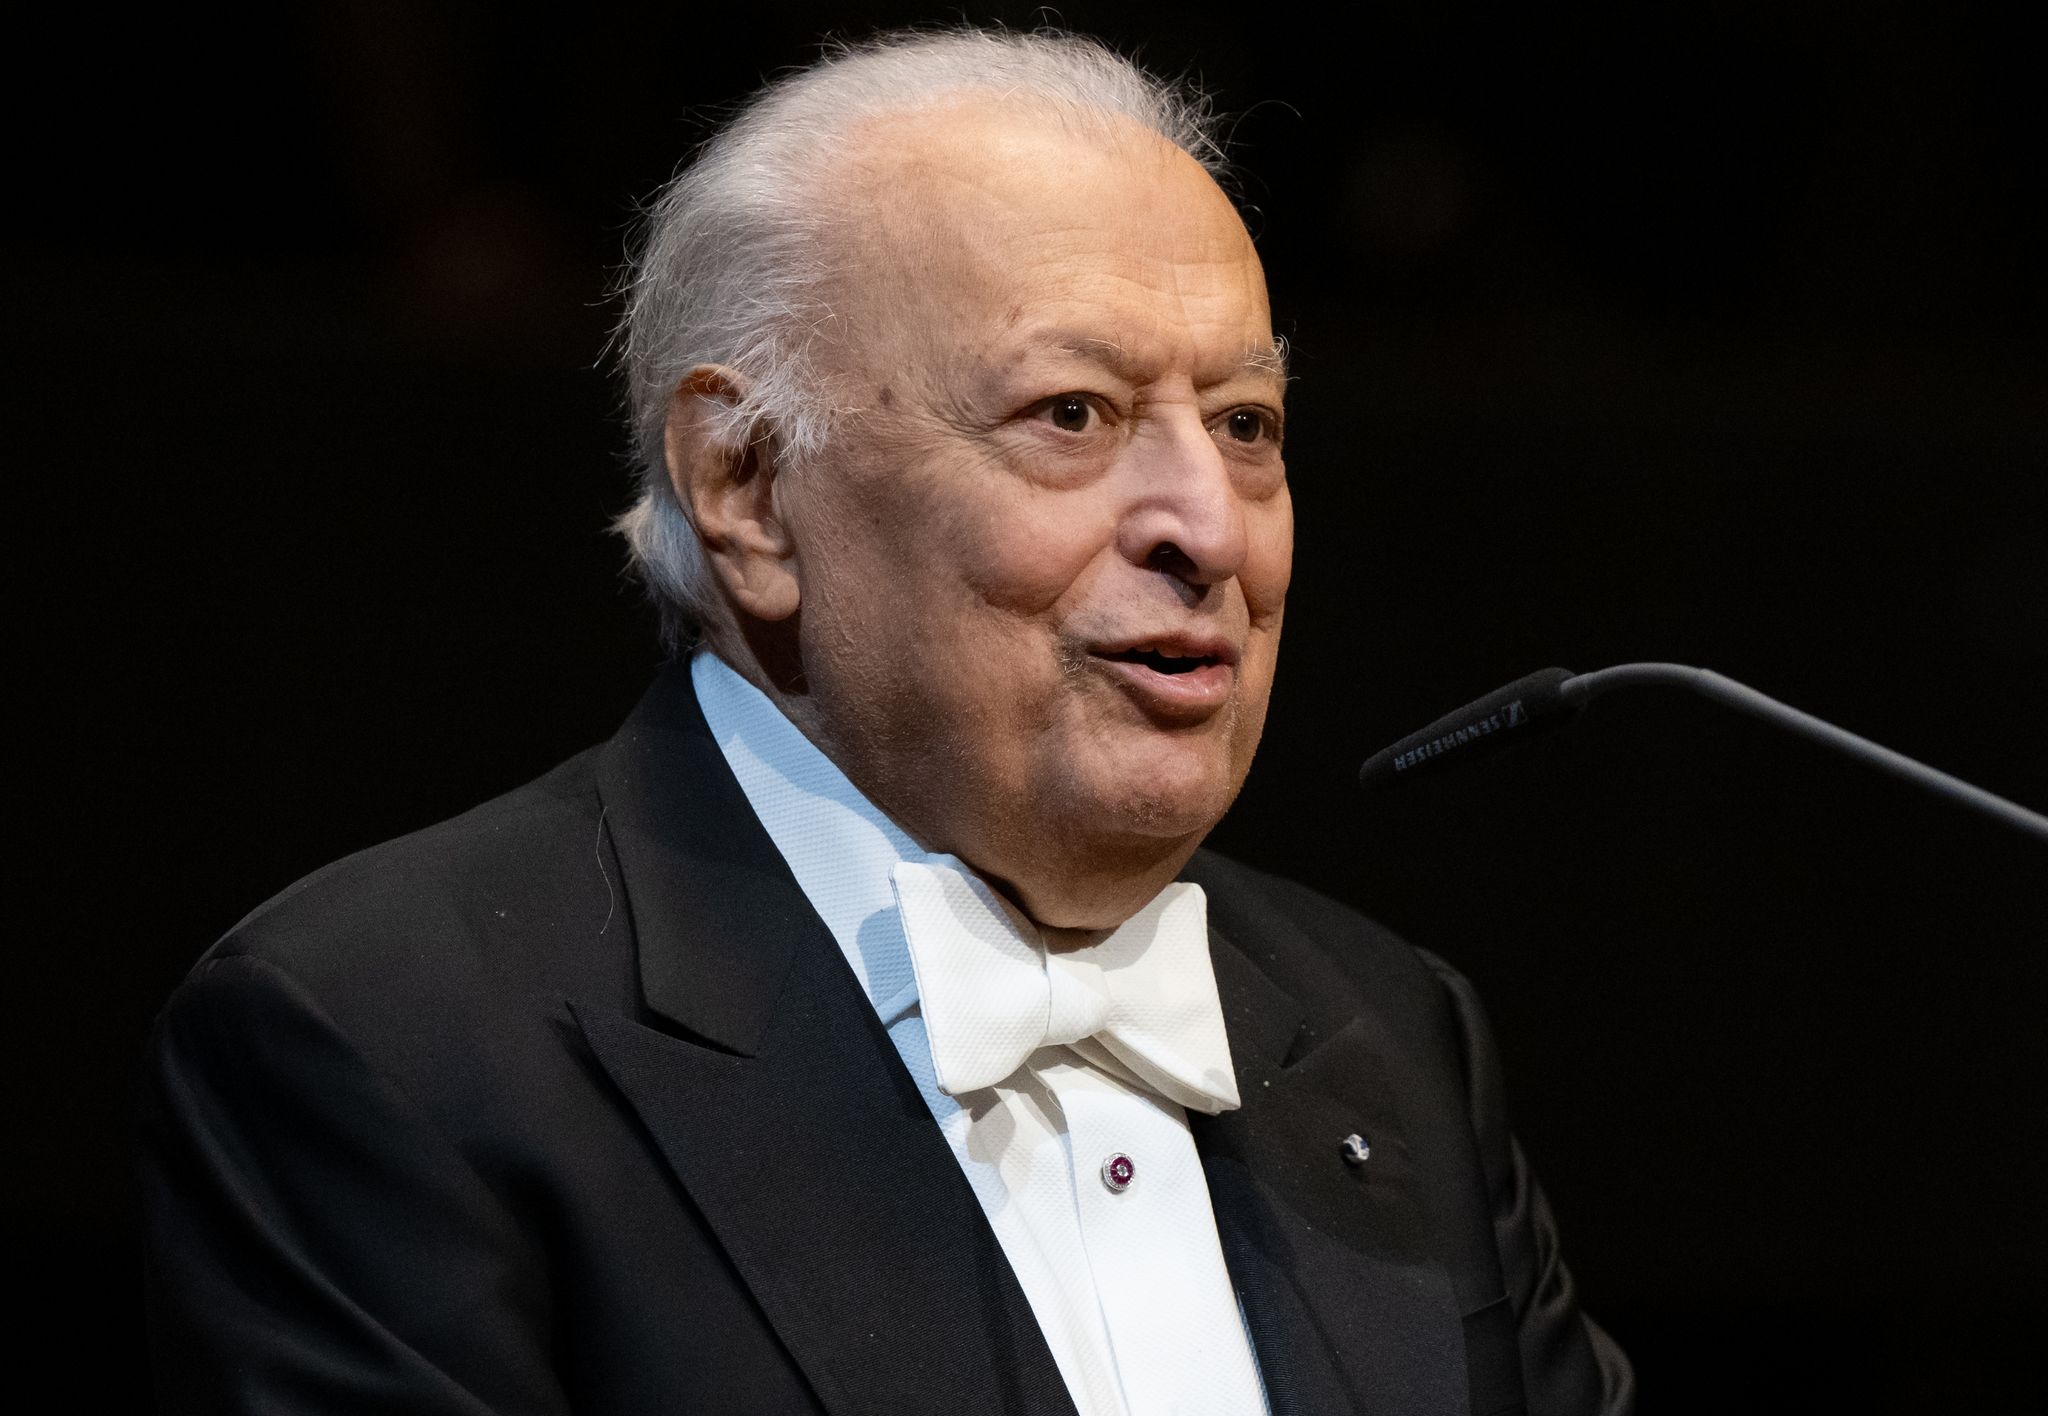 goldene ehrenmünze für dirigent zubin mehta